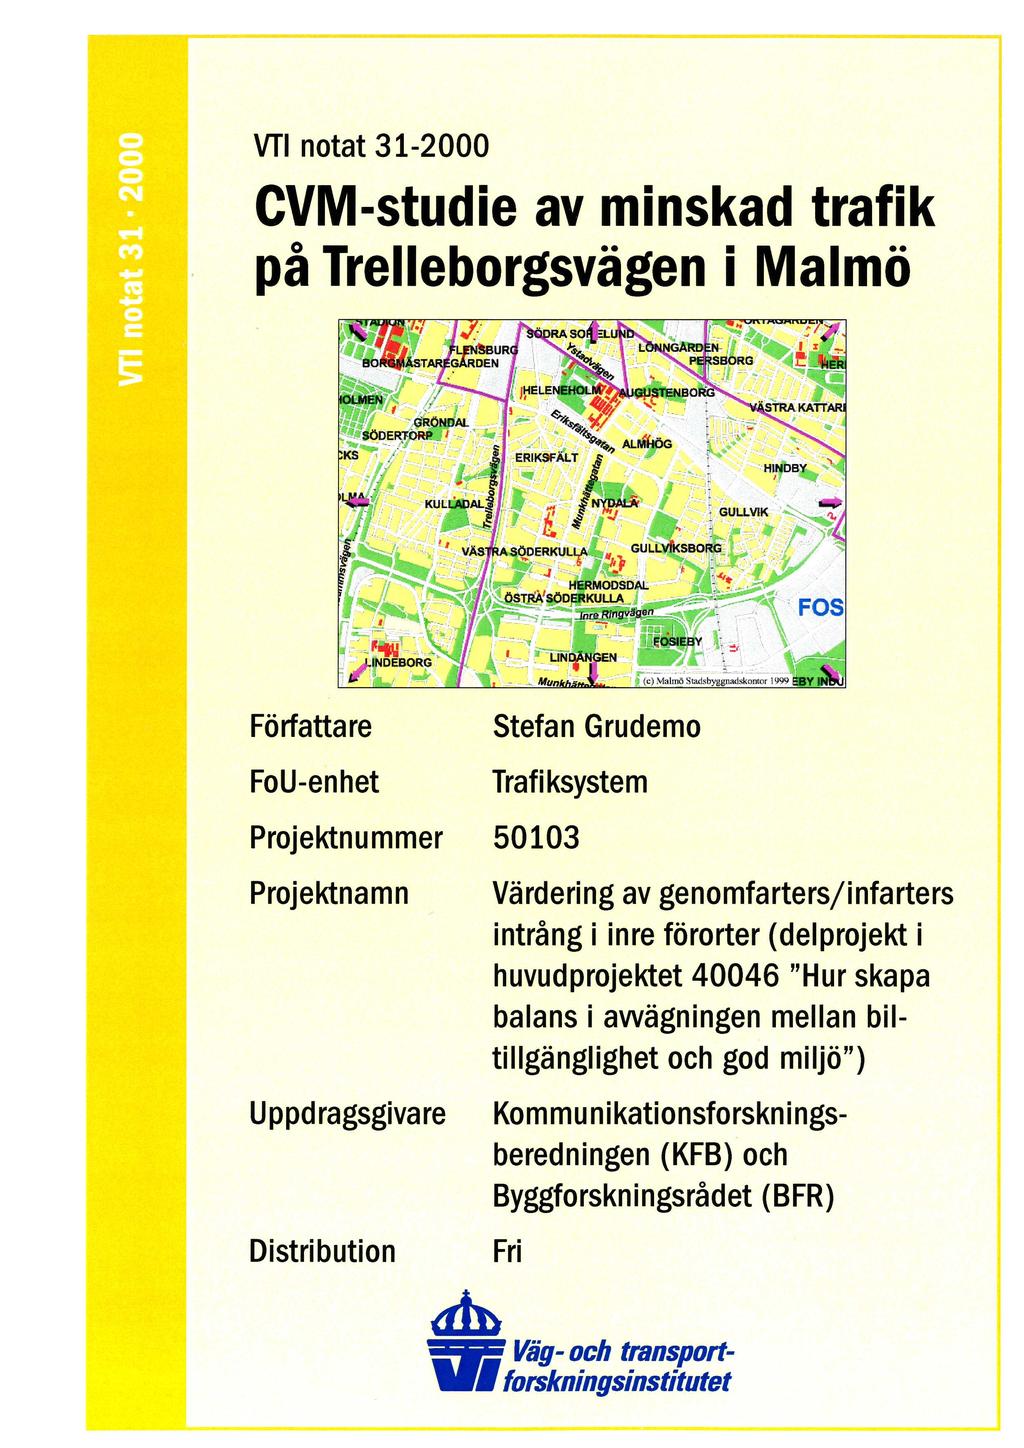 O O O N v-l m H G H O = VTI notat 31-2000 CVM-studie av minskad trafik på Trelleborgsvägen i Malmö rv 7. 2;;._._. :137). Risk..., ; ;i 1-* ie' u..l, 4. ' - ;1. J 1 '.. s'cp.